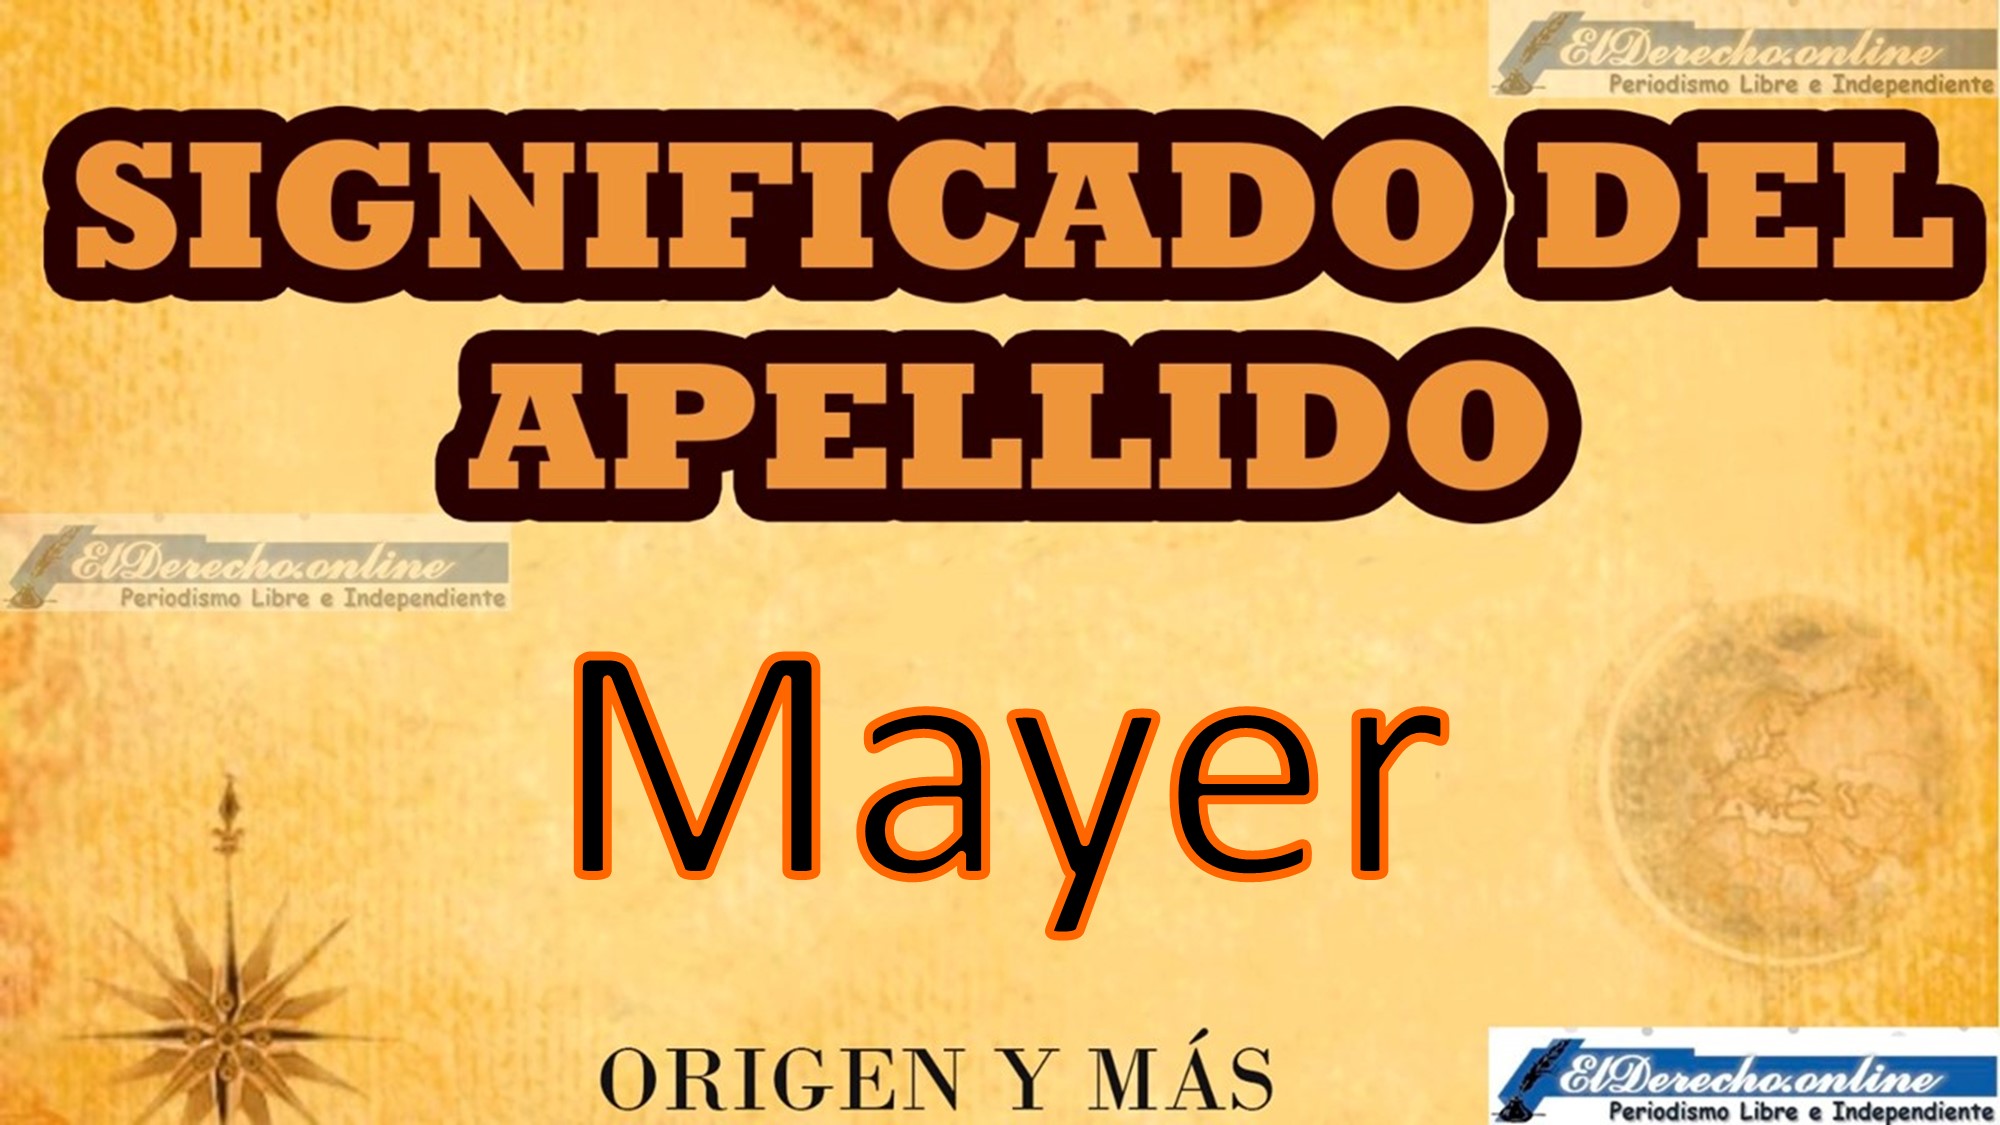 Significado del apellido Mayer, Origen y más